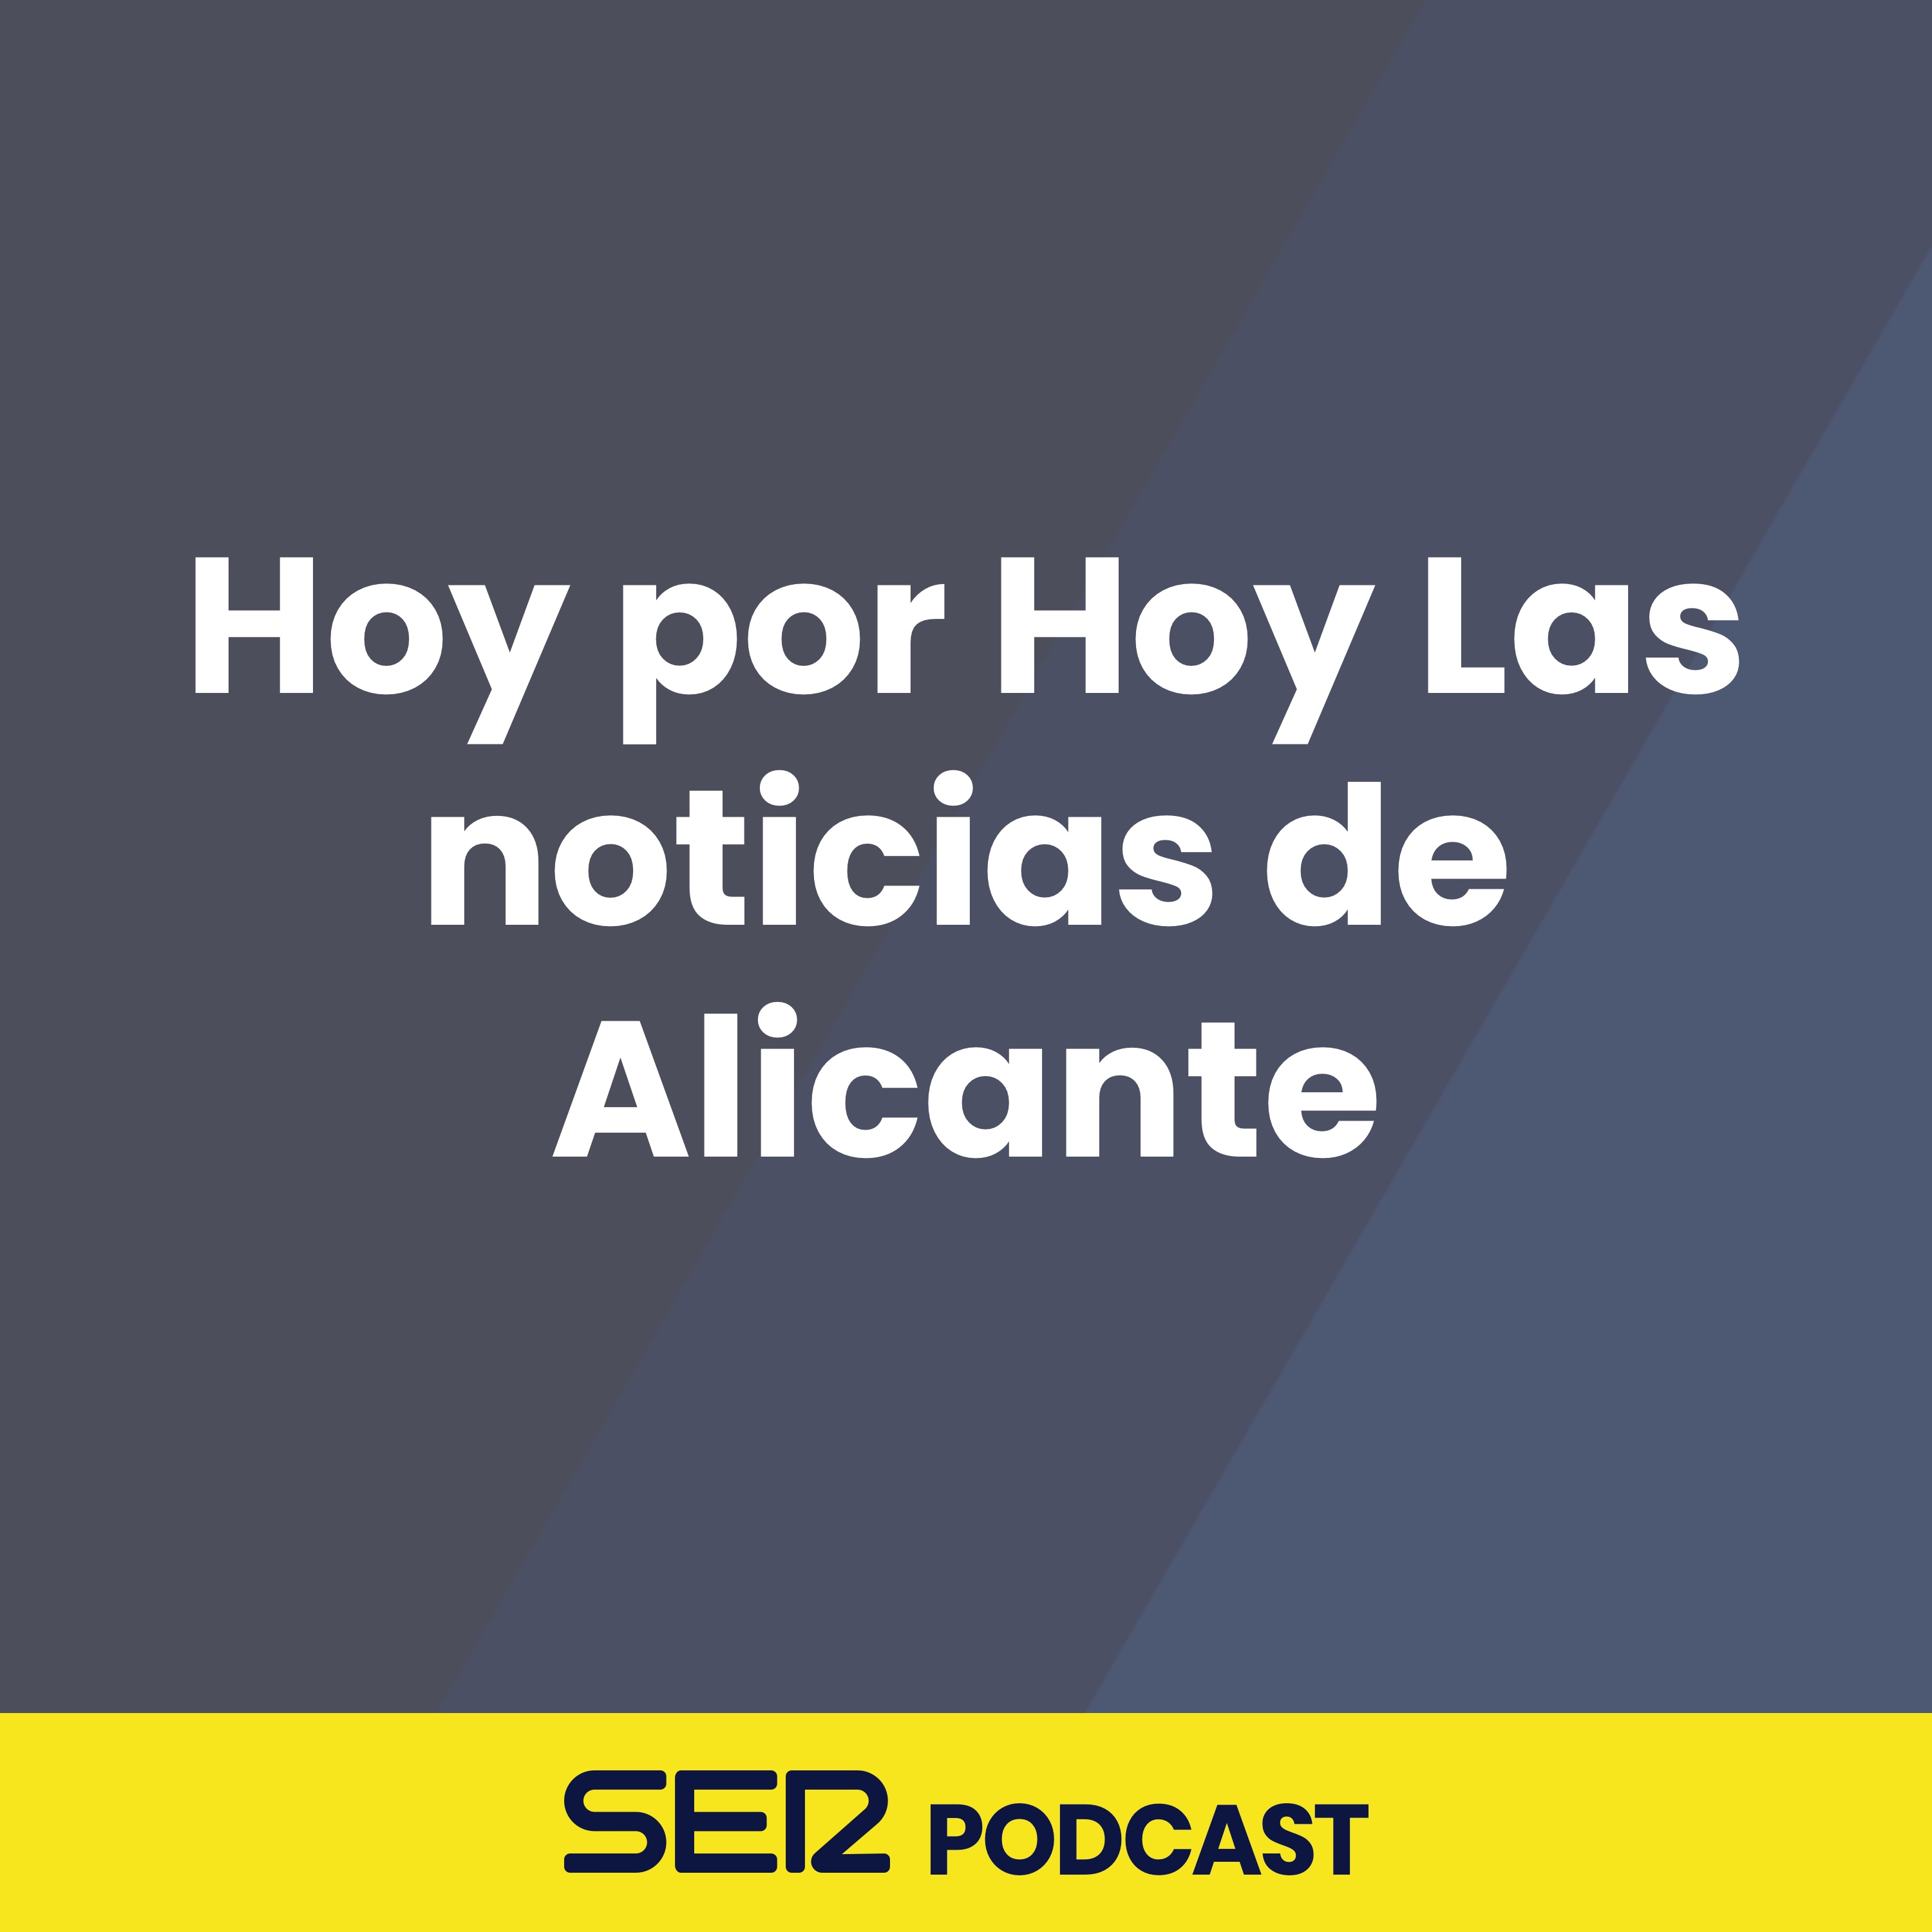 Hoy por Hoy Las noticias de Alicante